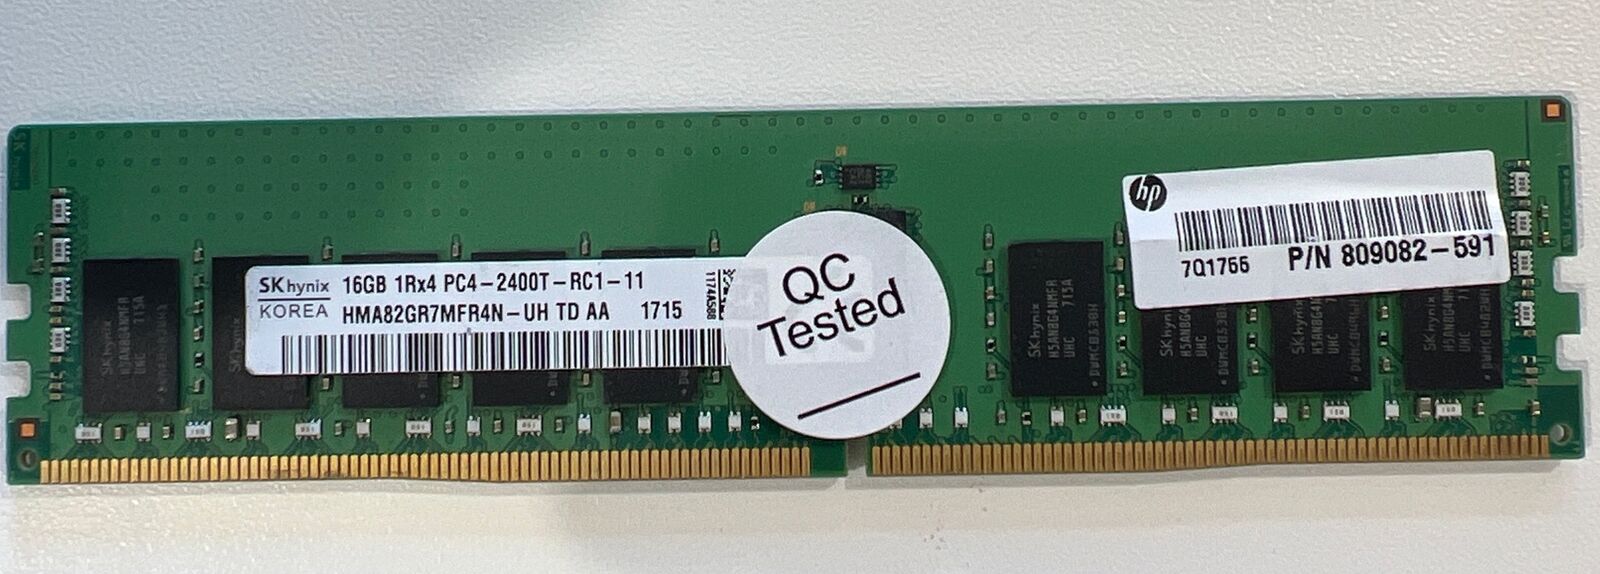 HMA82GR7MFR4N-UH HYNIX 16GB (1X16GB) 1RX4 DDR4 PC4-2400T MEMORY